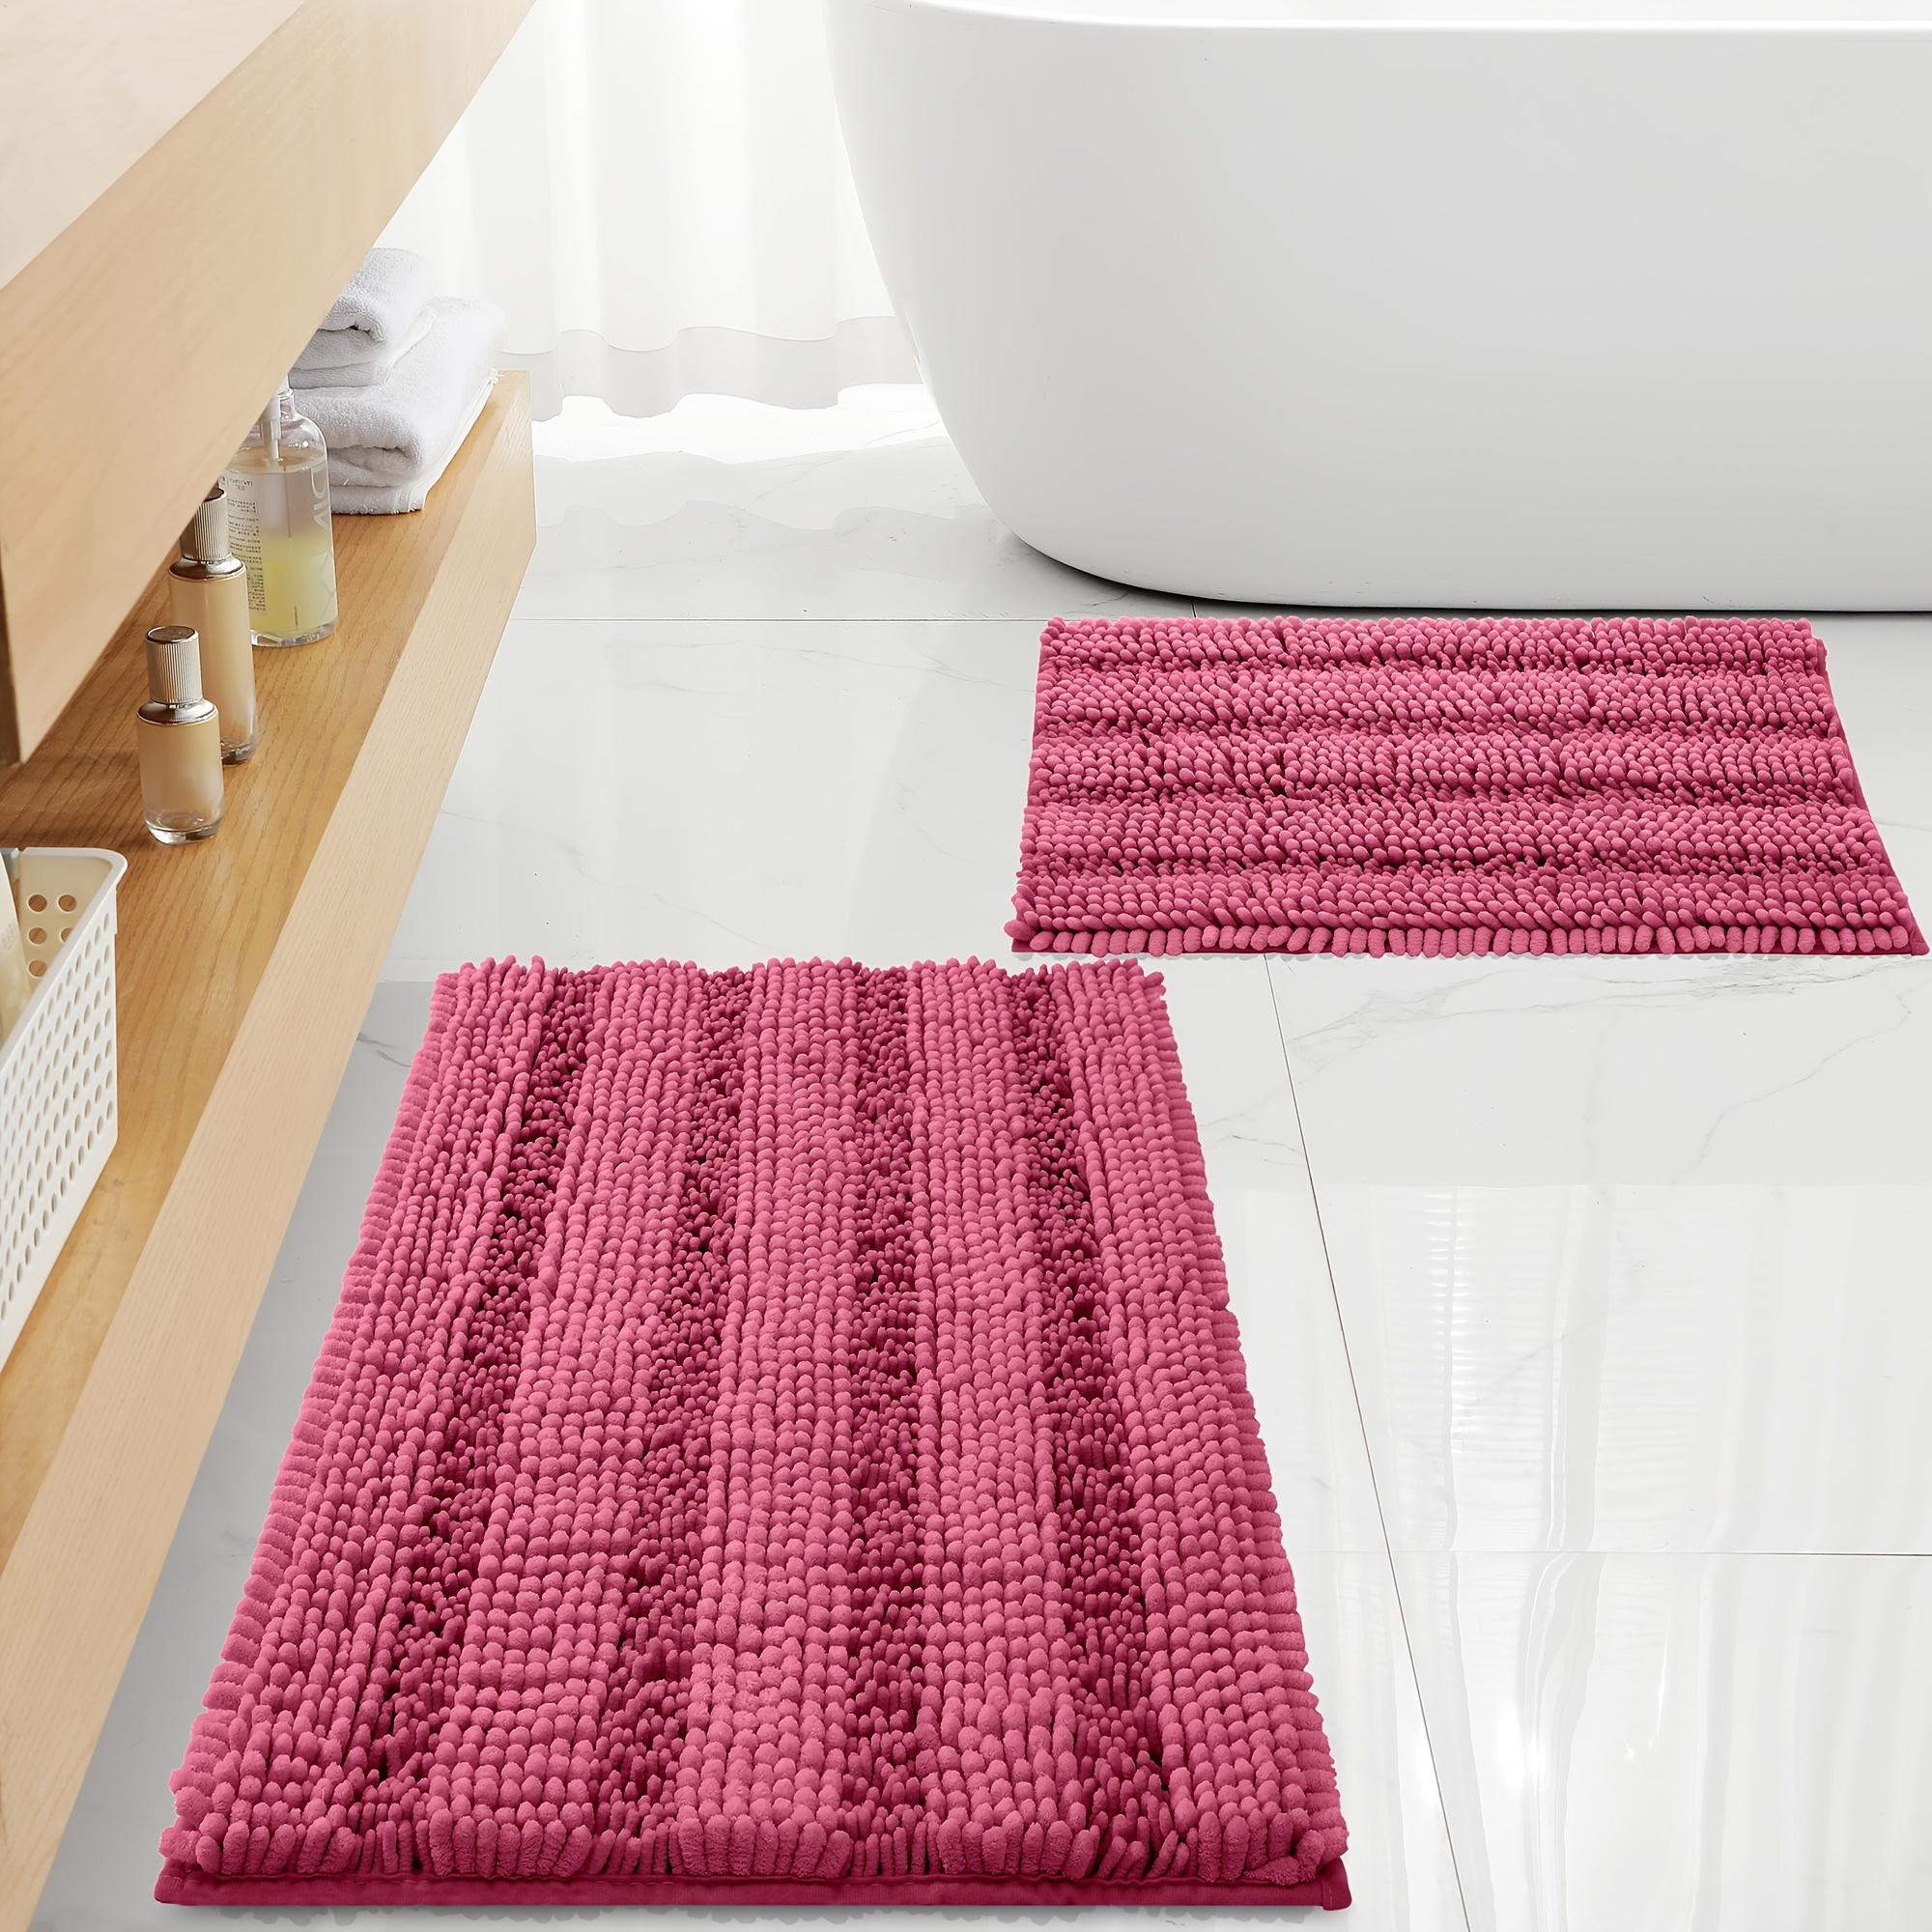 Tapete de ducha antideslizante de loofah - Tapete de baño suave y  absorbente para una ducha segura y cómoda, alfombras de cocina, lavandería,  dormitor